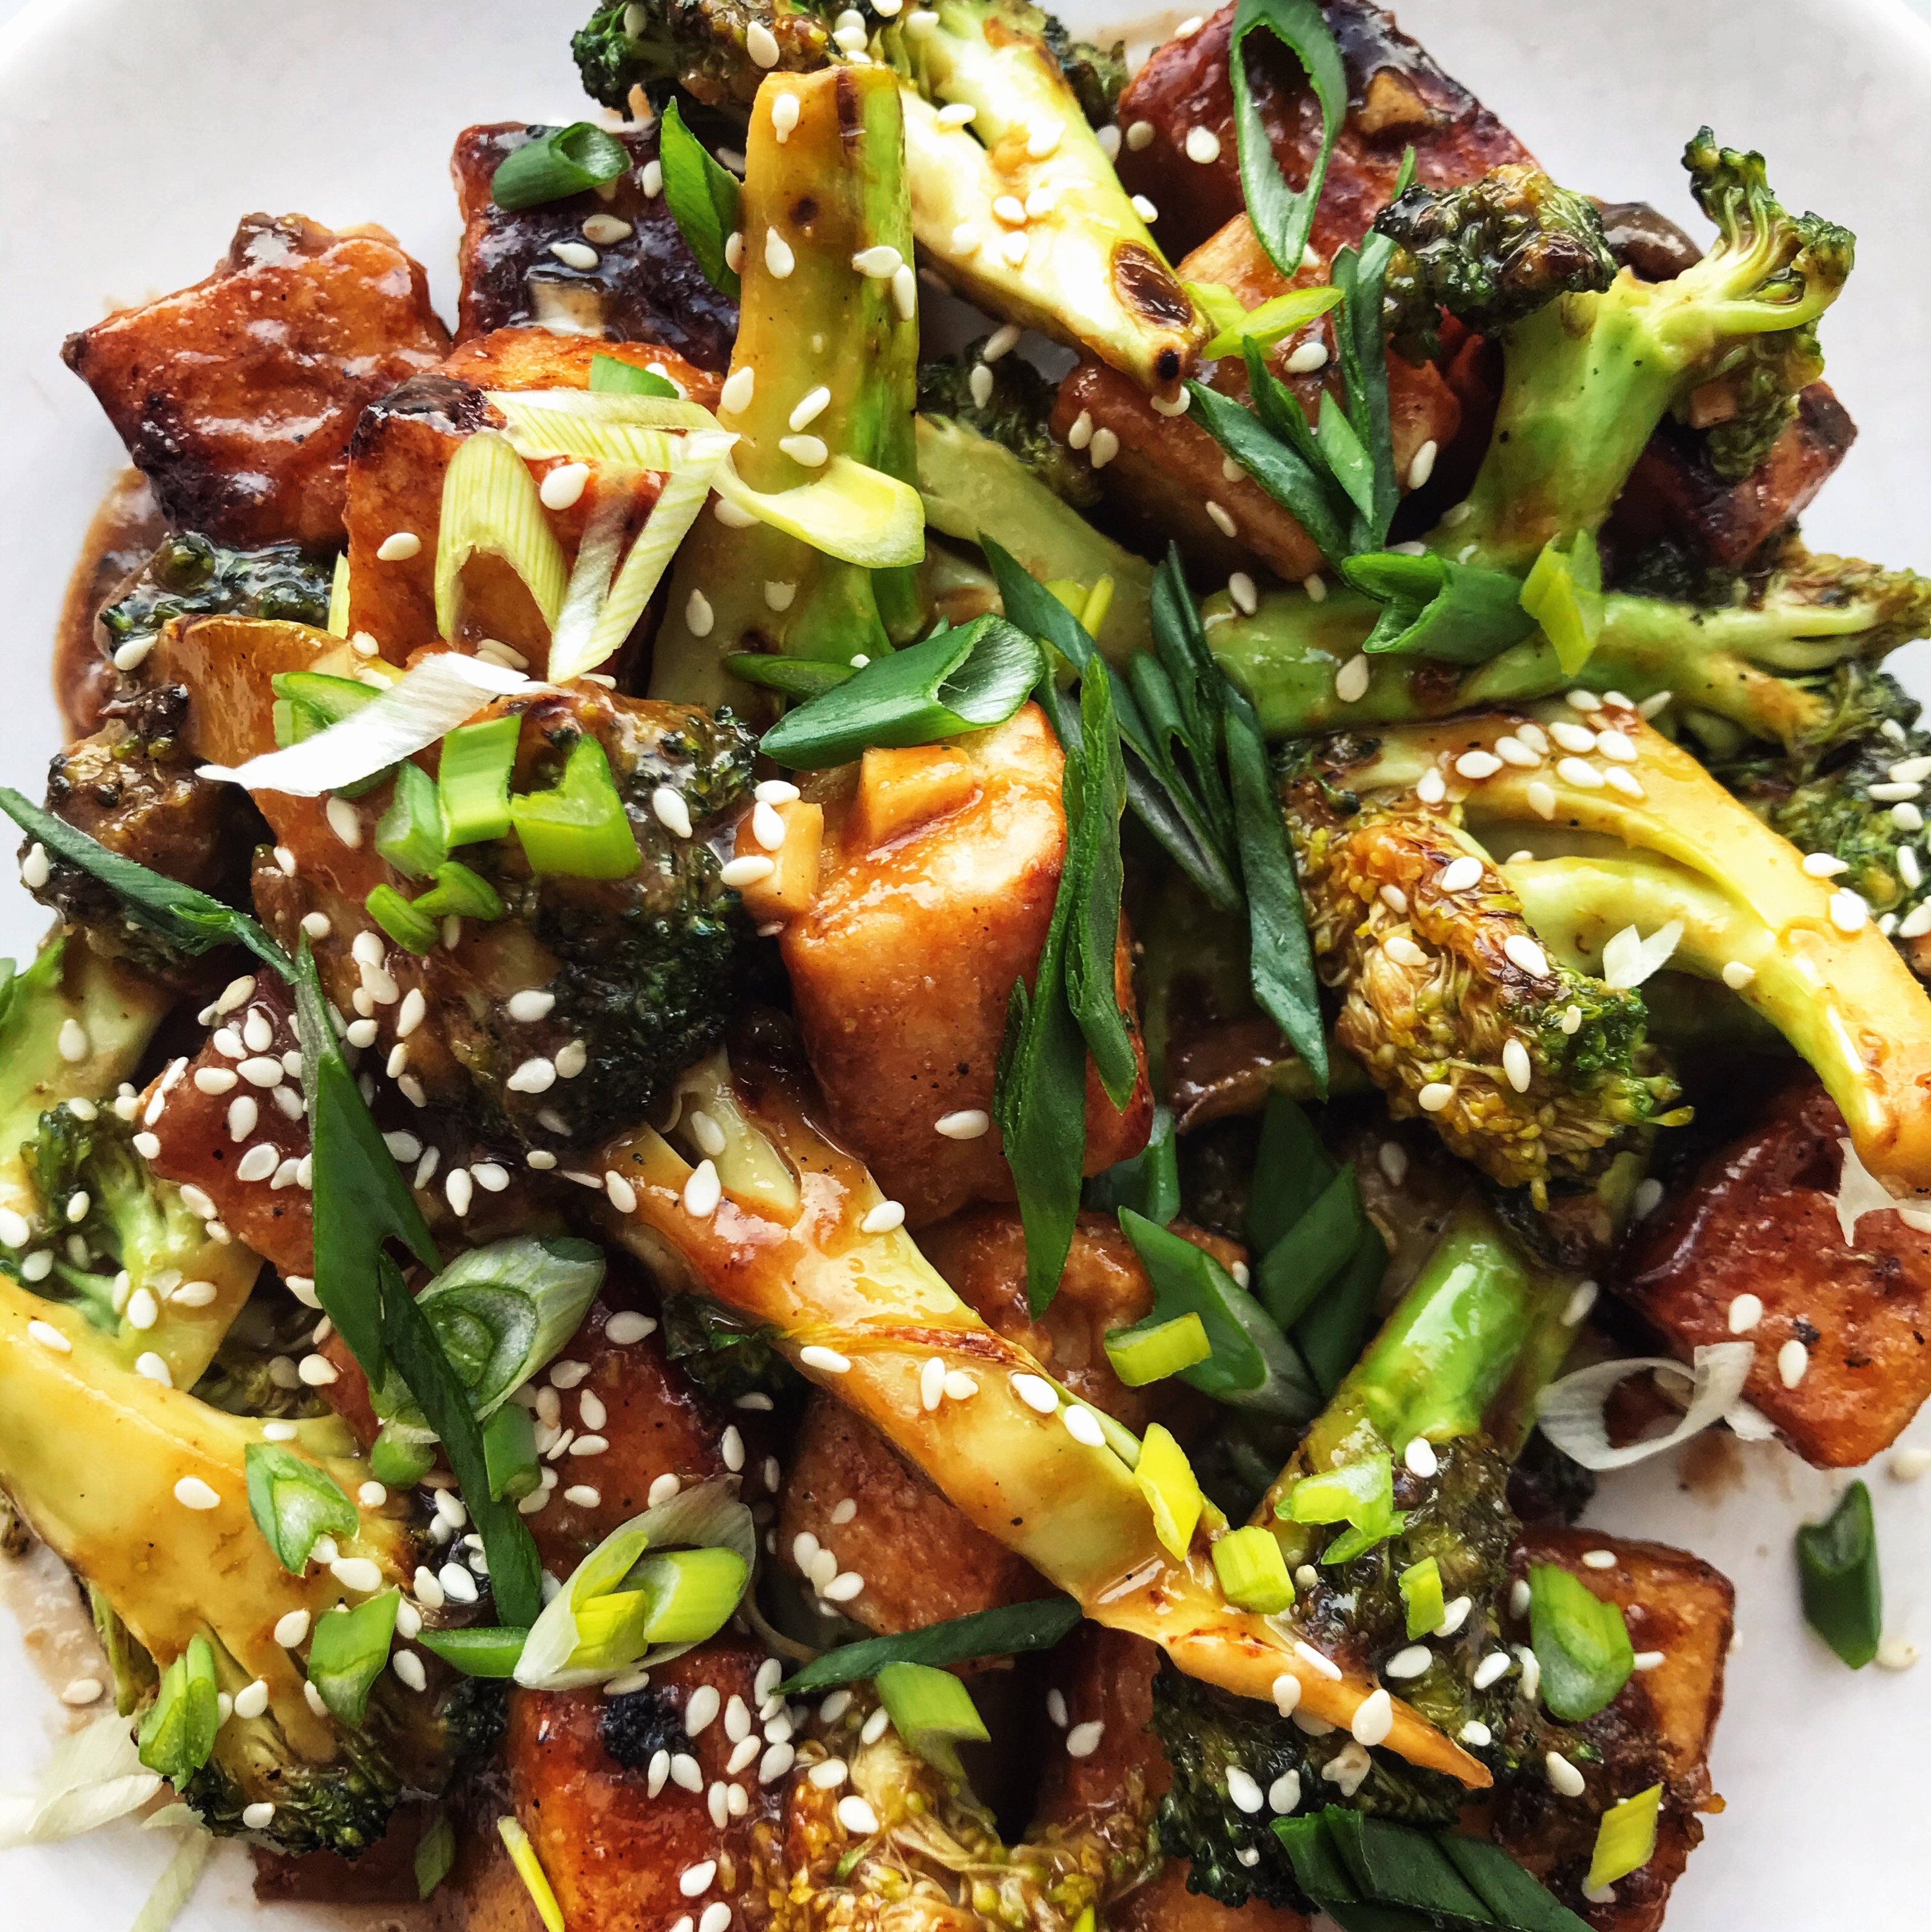 Sesame tofu with broccoli